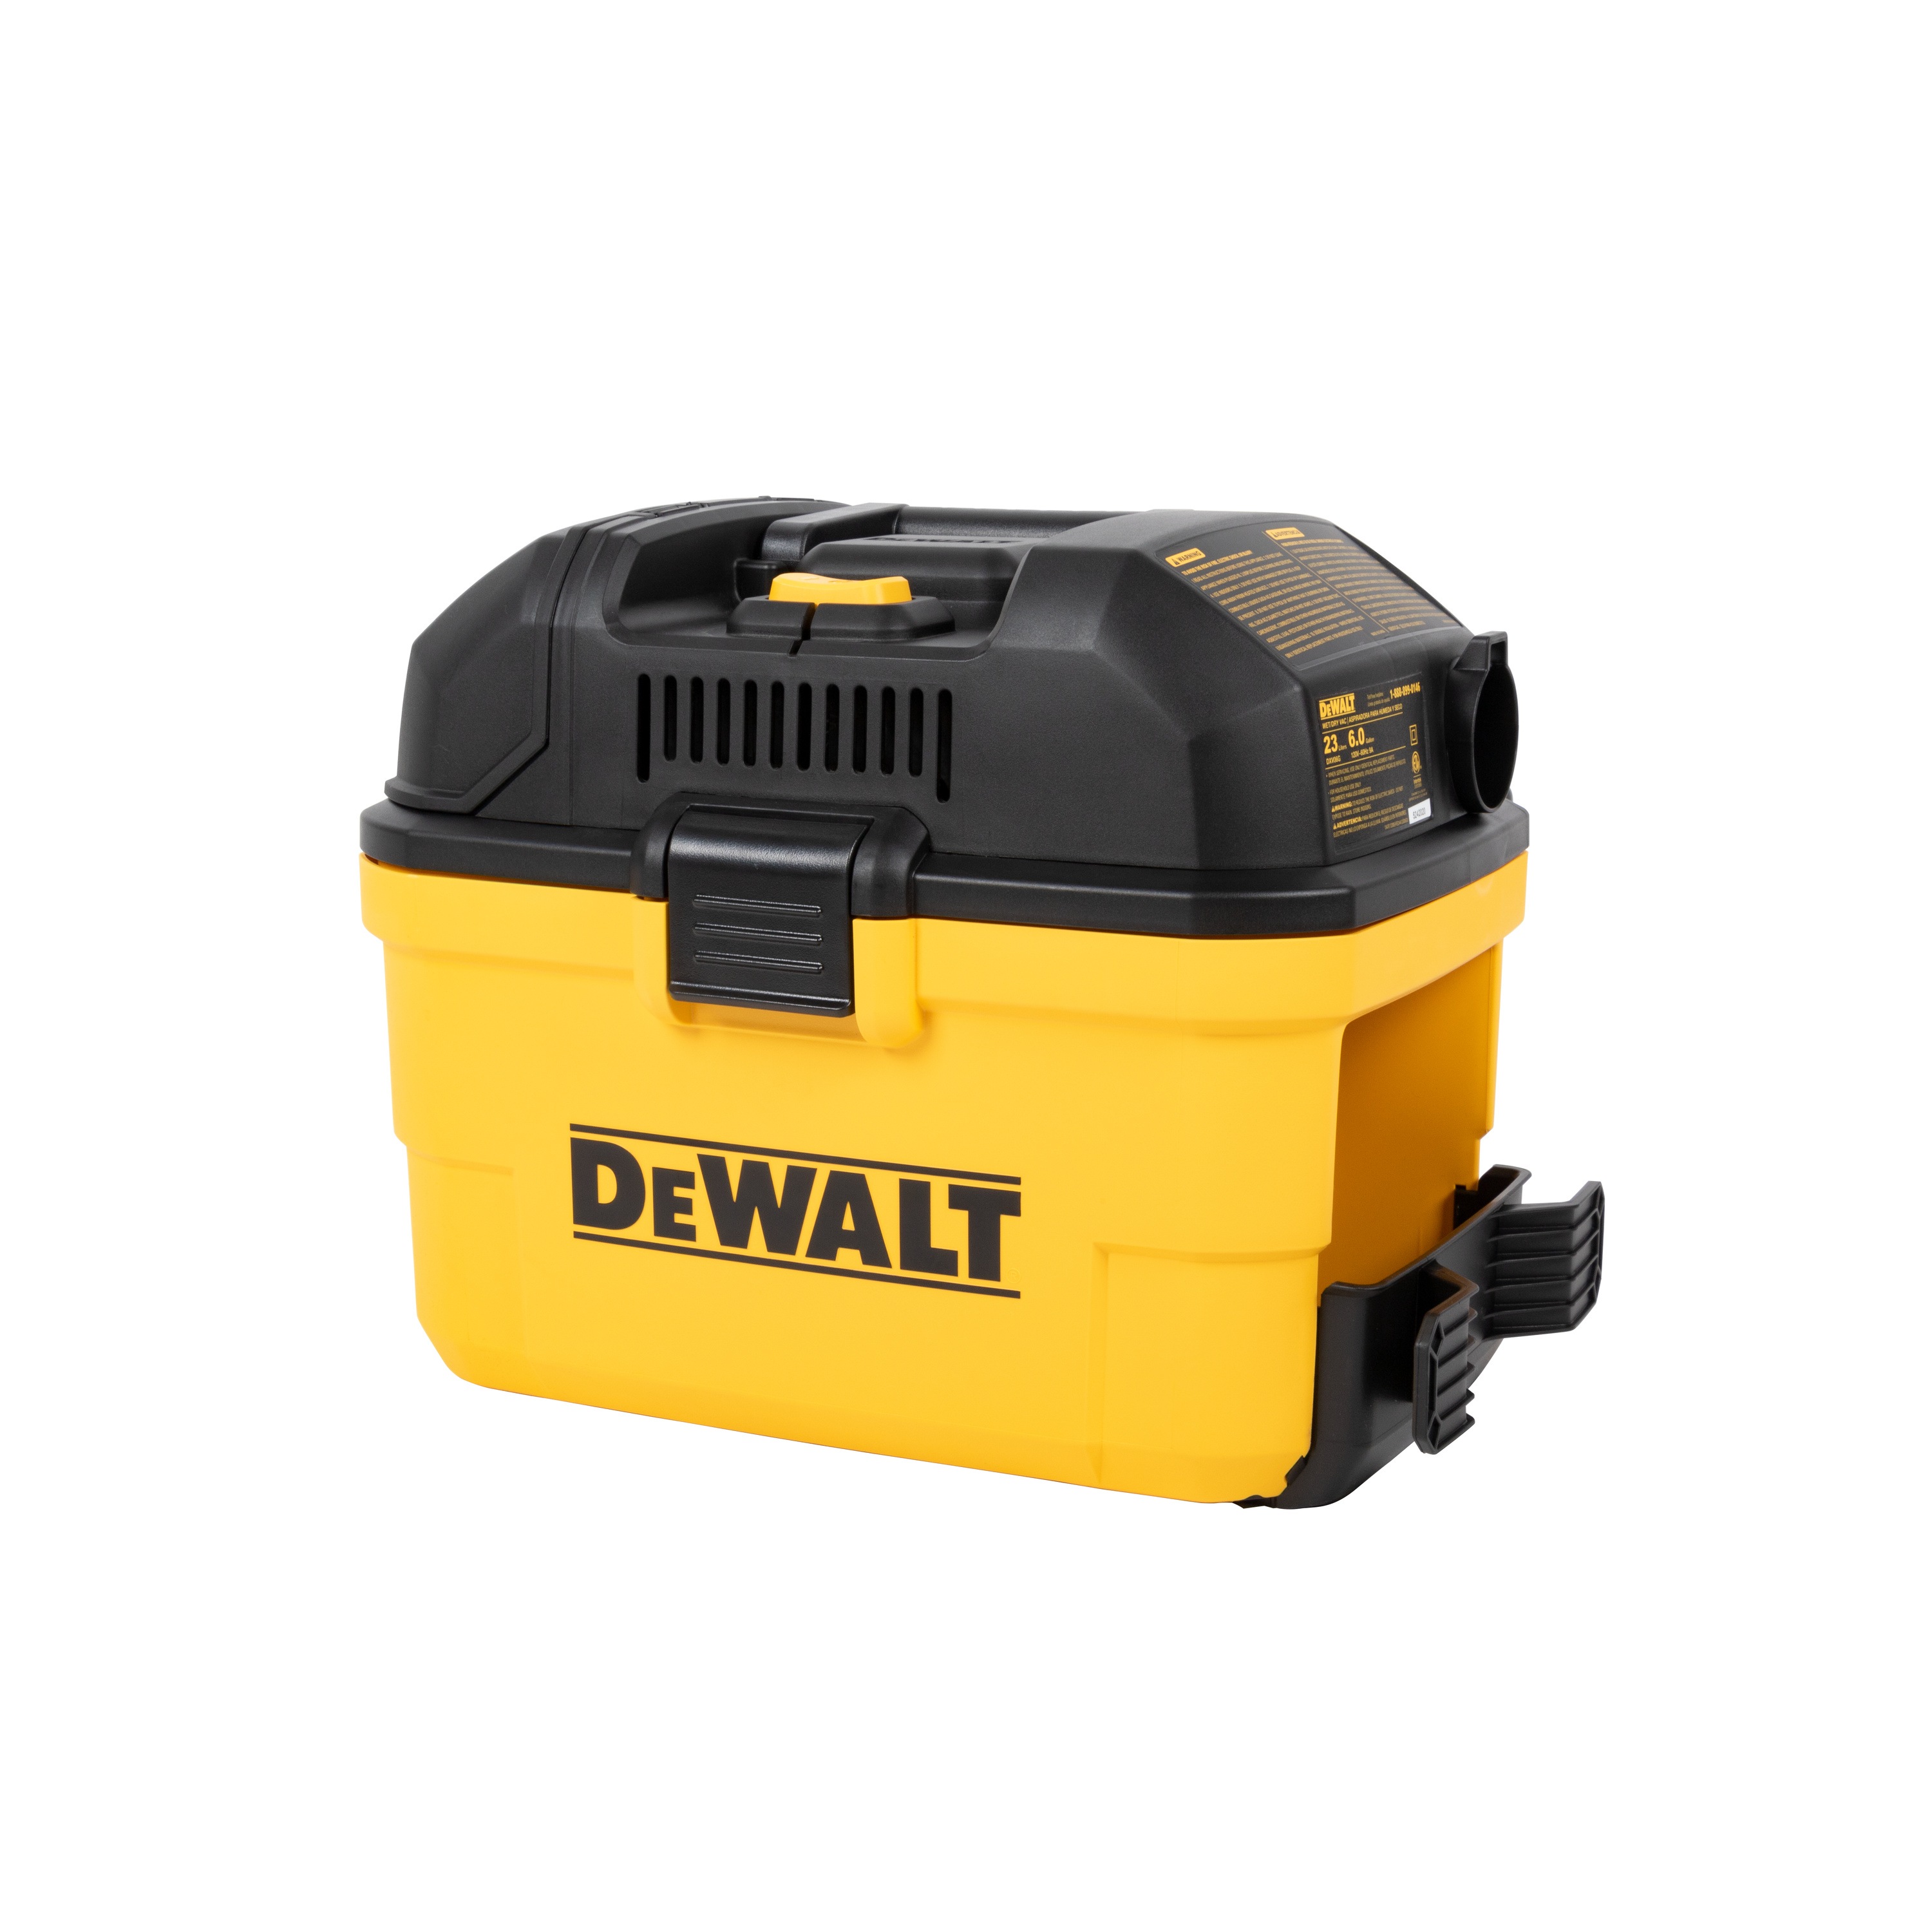 DEWALT - 6 gal WallMounted WetDry Vacuum with Wireless OnOff Control - DXV06G